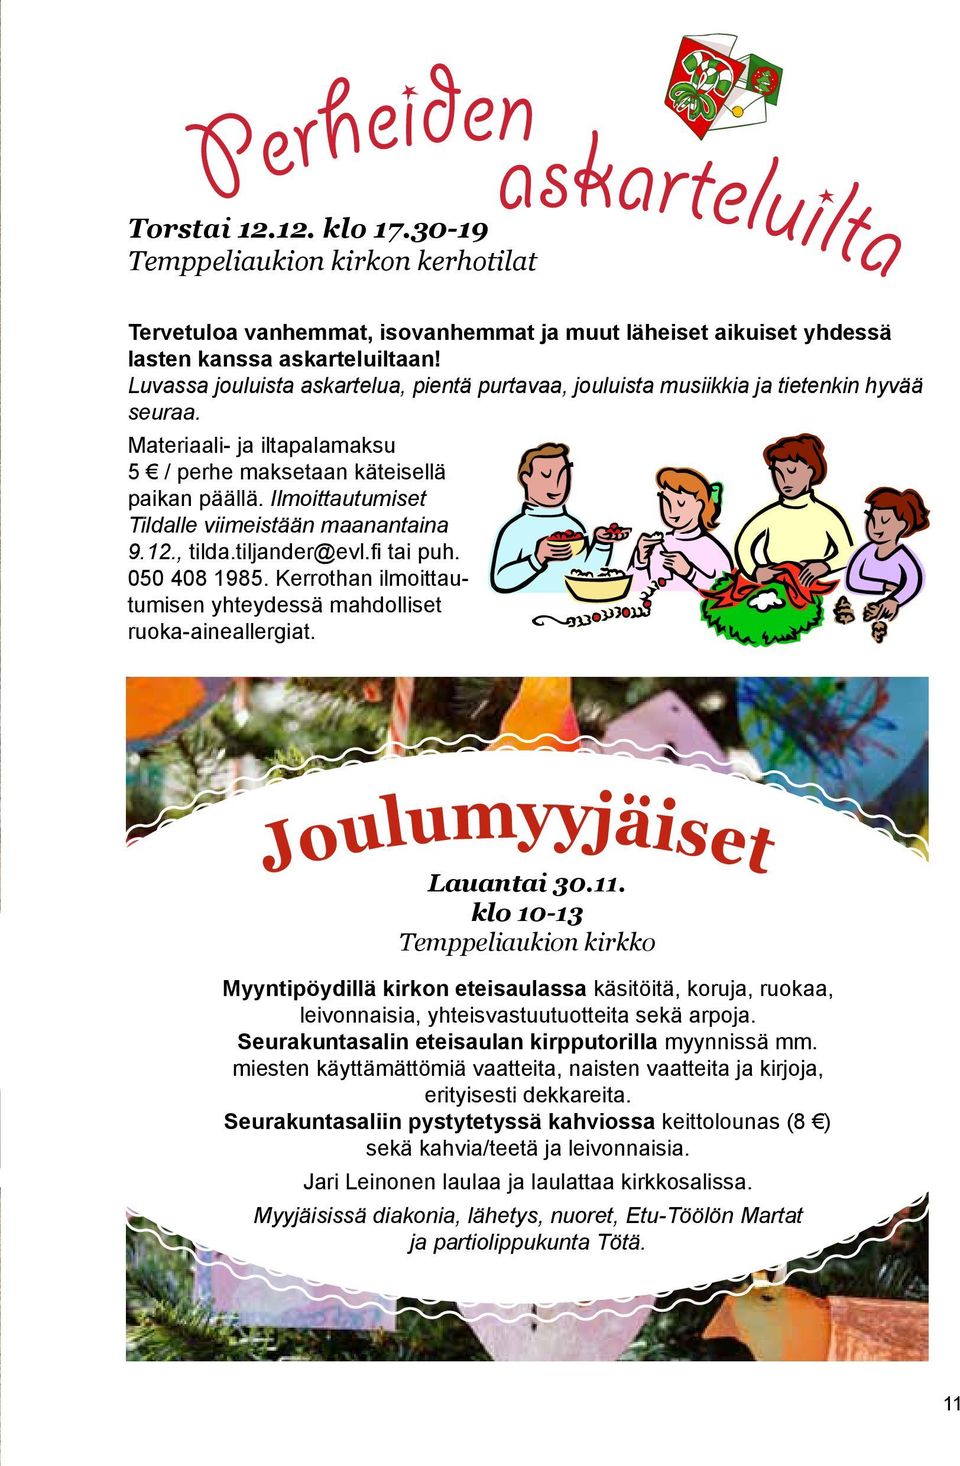 Ilmoittautumiset Tildalle viimeistään maanantaina 9.12., tilda.tiljander@evl.fi tai puh. 050 408 1985. Kerrothan ilmoittautumisen yhteydessä mahdolliset ruoka-aineallergiat.